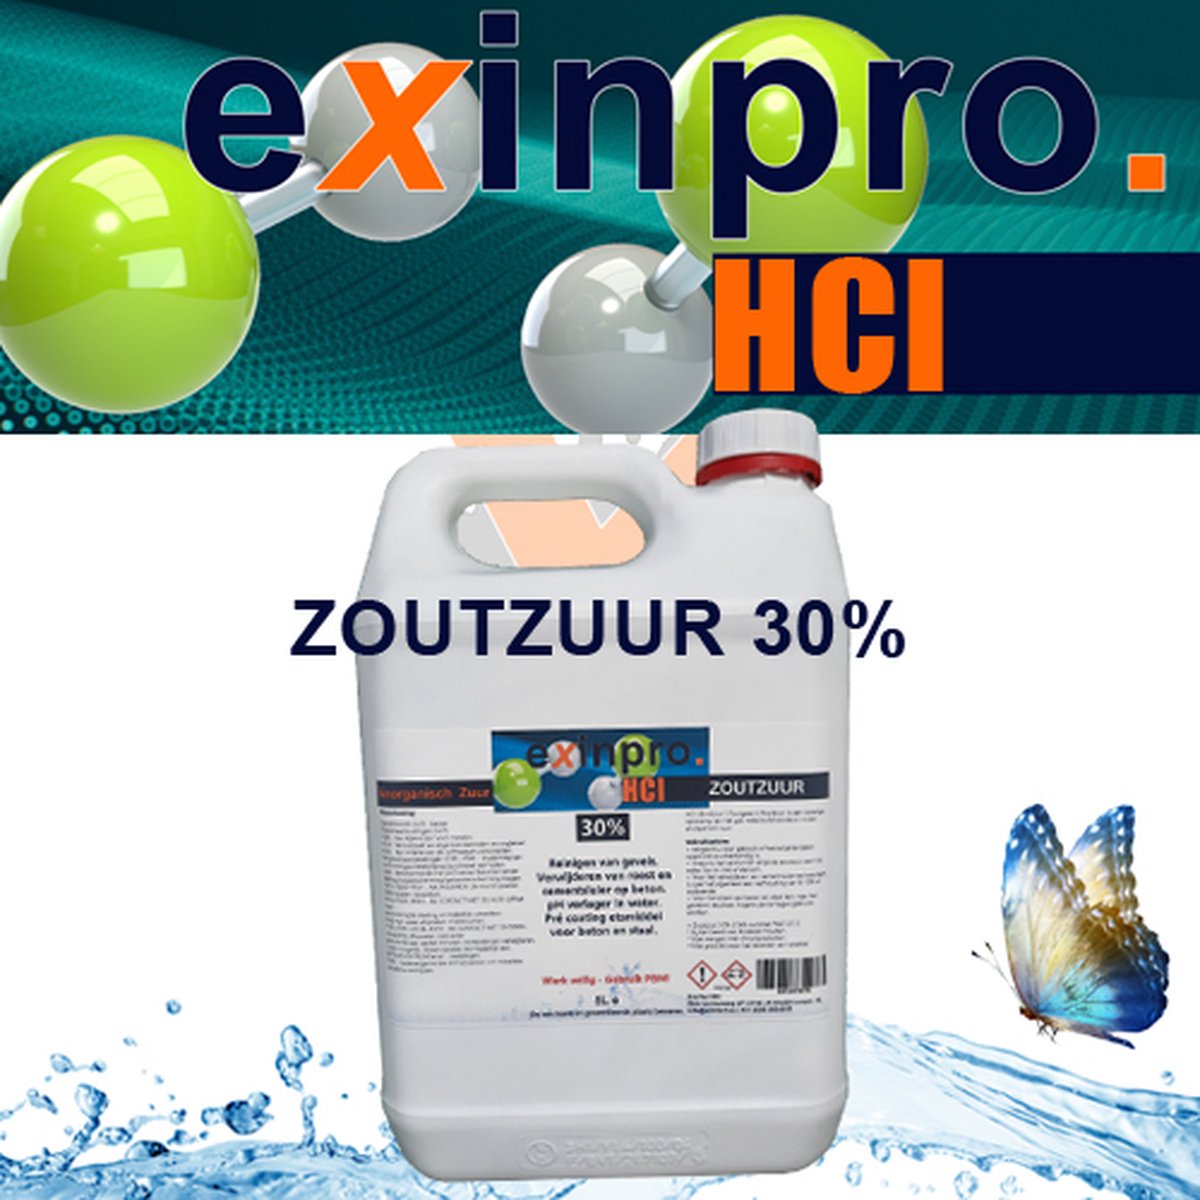 exinpro Zoutzuur 30% | 5L | HCl | Voor het verwijderen van cementsluier en opfrissen van gevels | Etsen van beton en staal - exinpro Zoutzuur